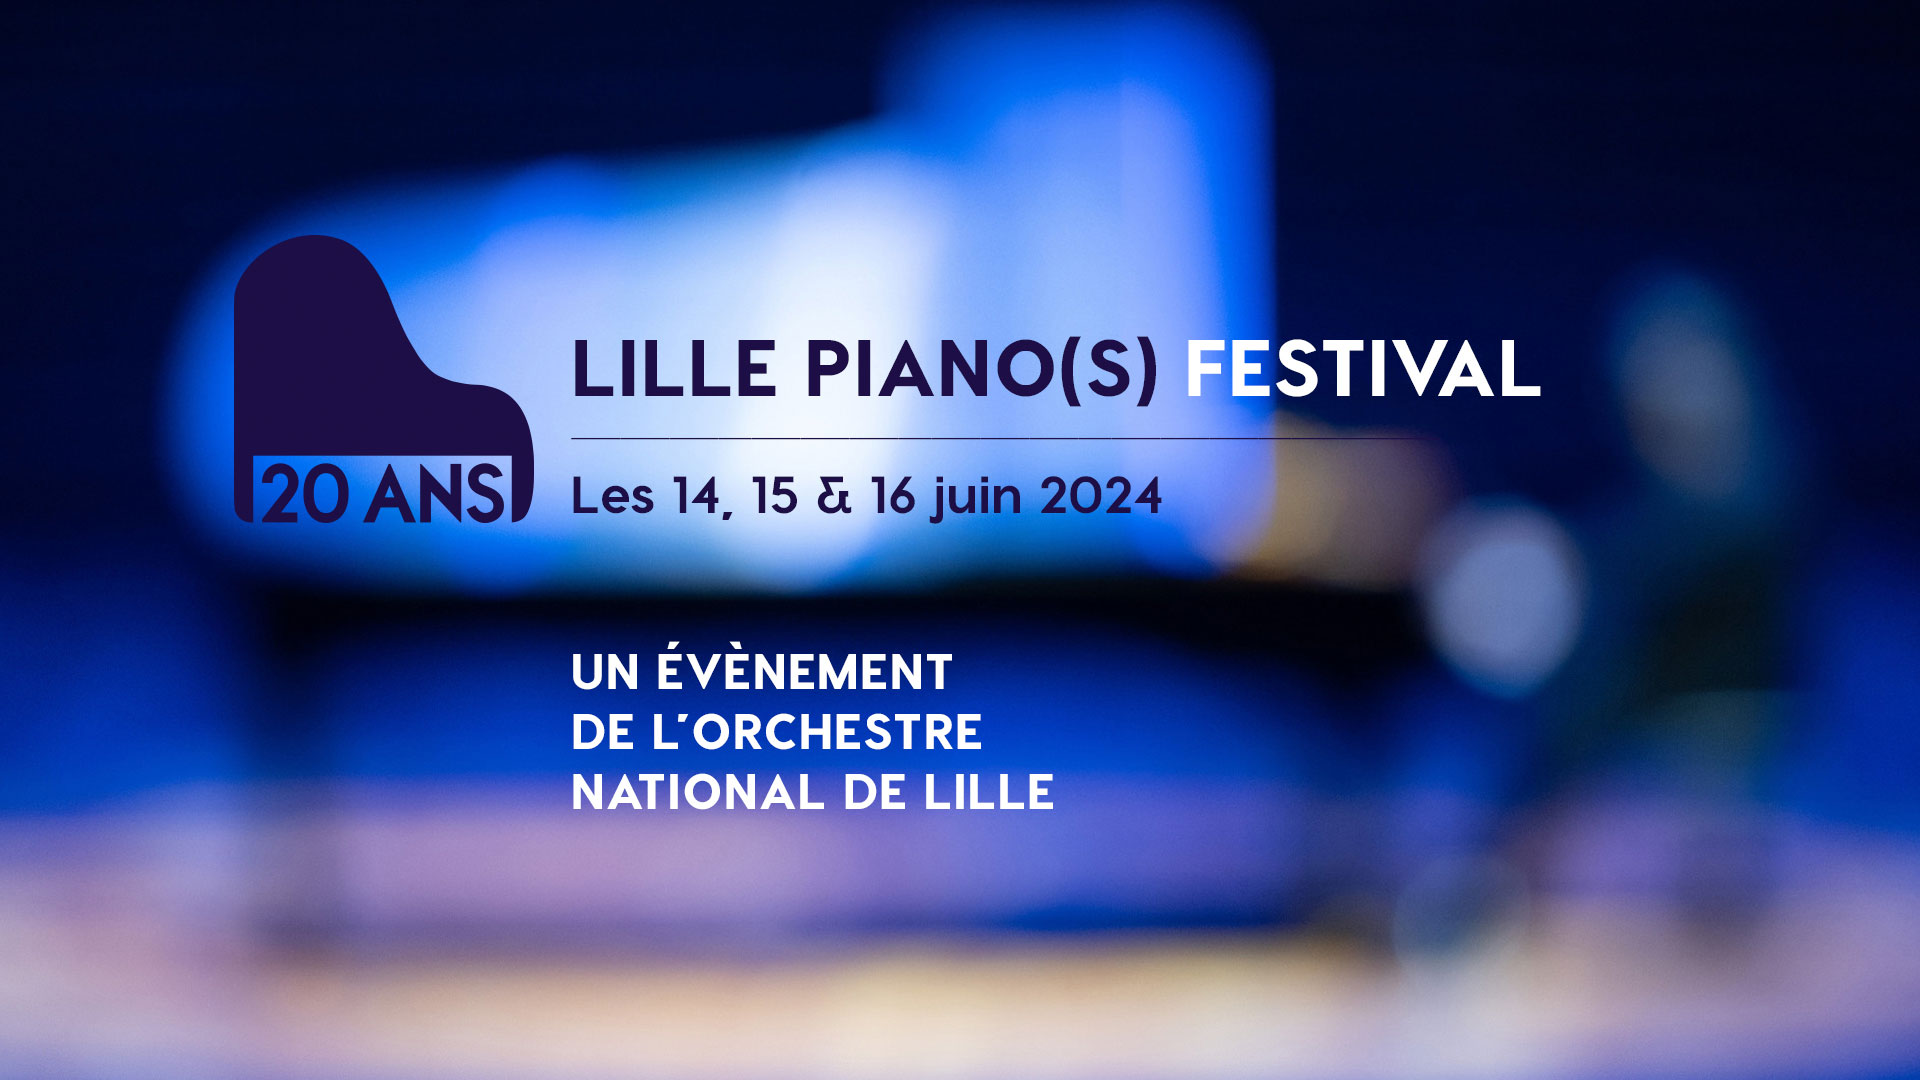 Lille Piano(s) Festival Vendredi 14, samedi 15, dimanche 16 juin 2024